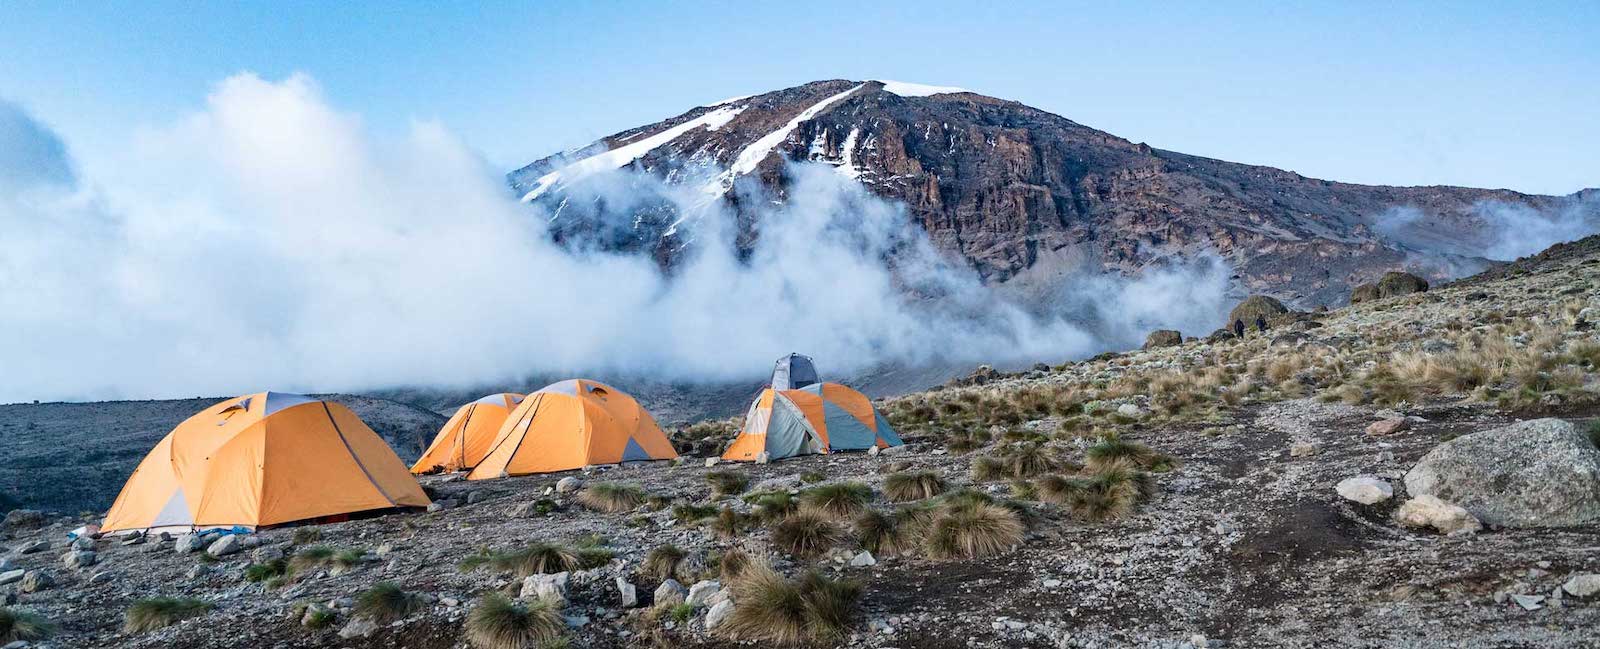 The Machame Route — Mount Kilimanjaro